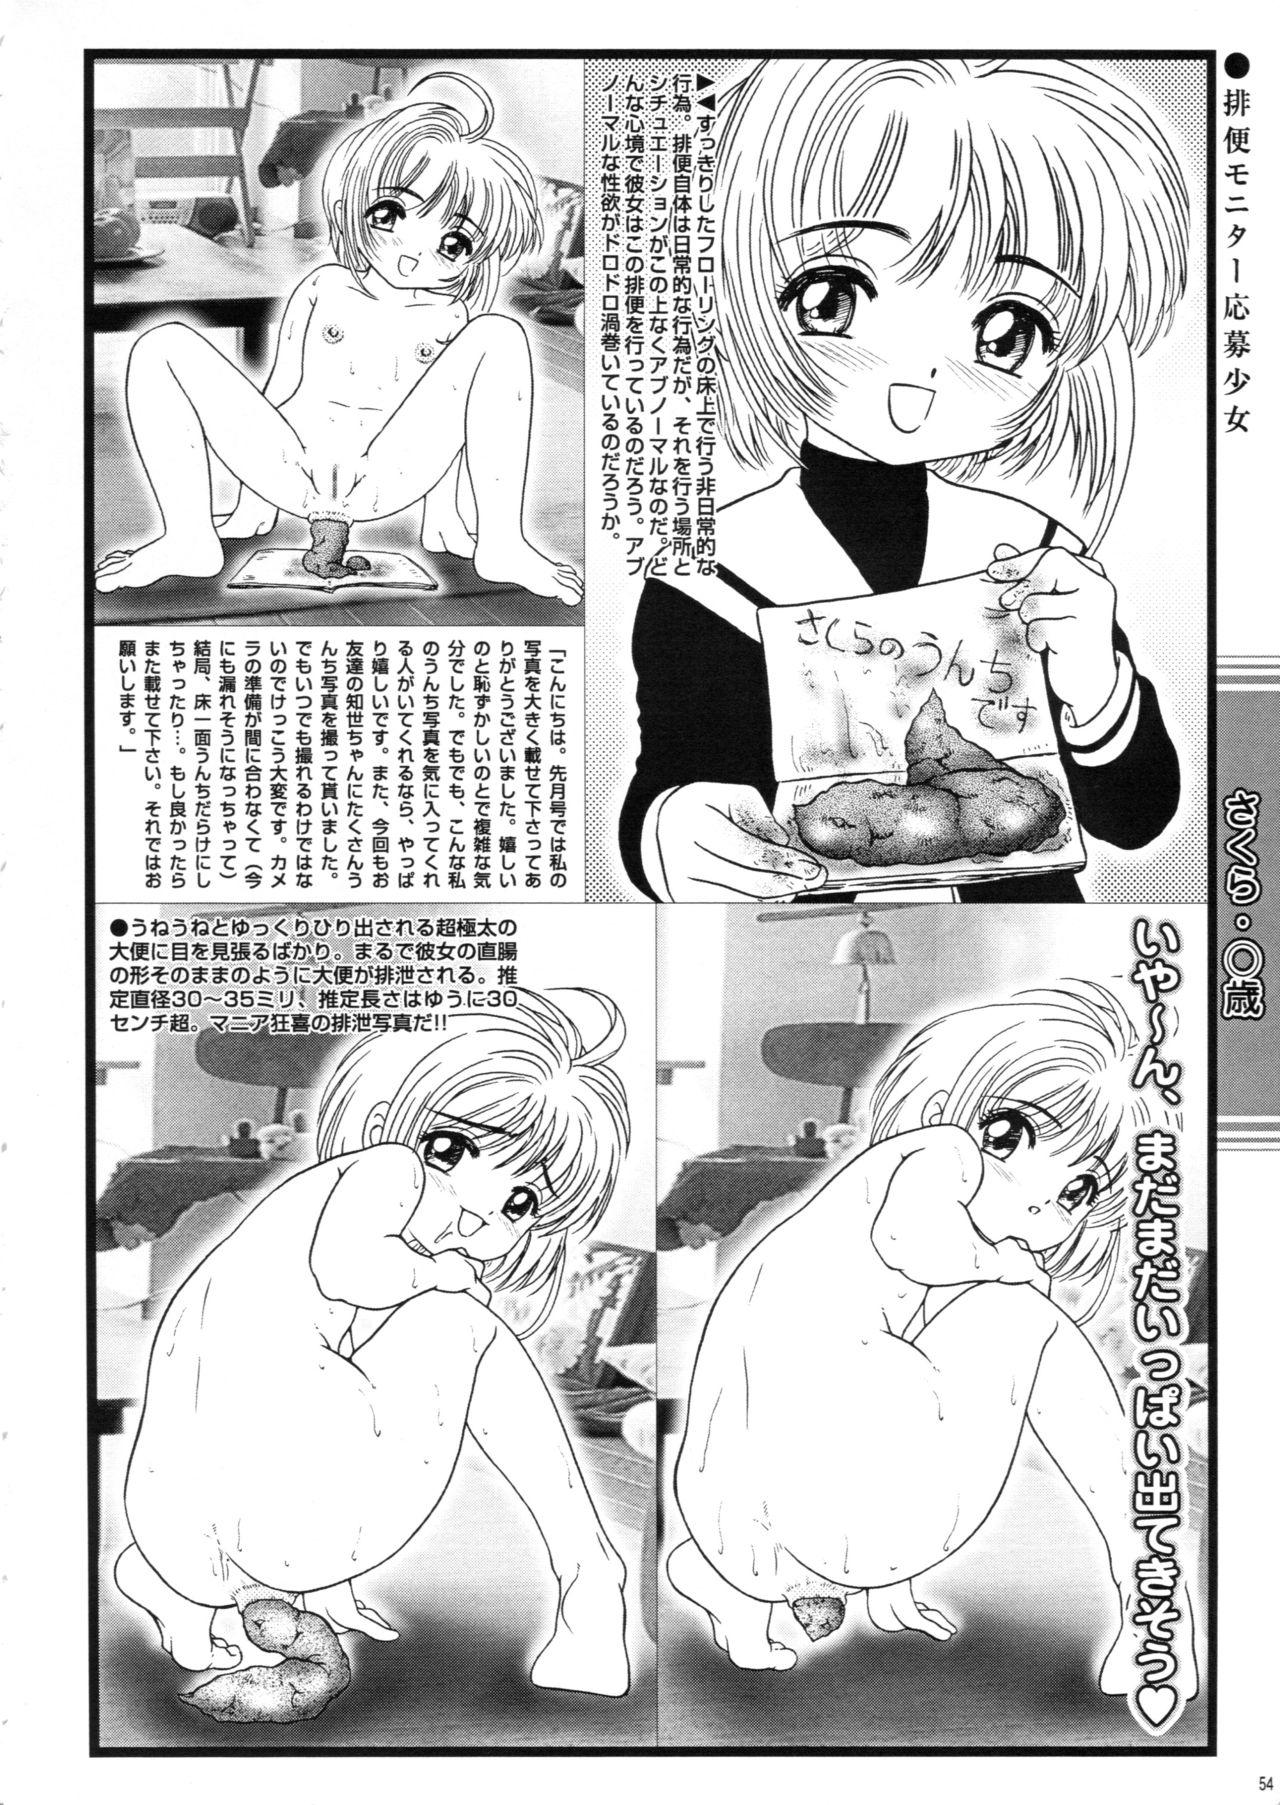 Saku-chan Club Vol. 02 52